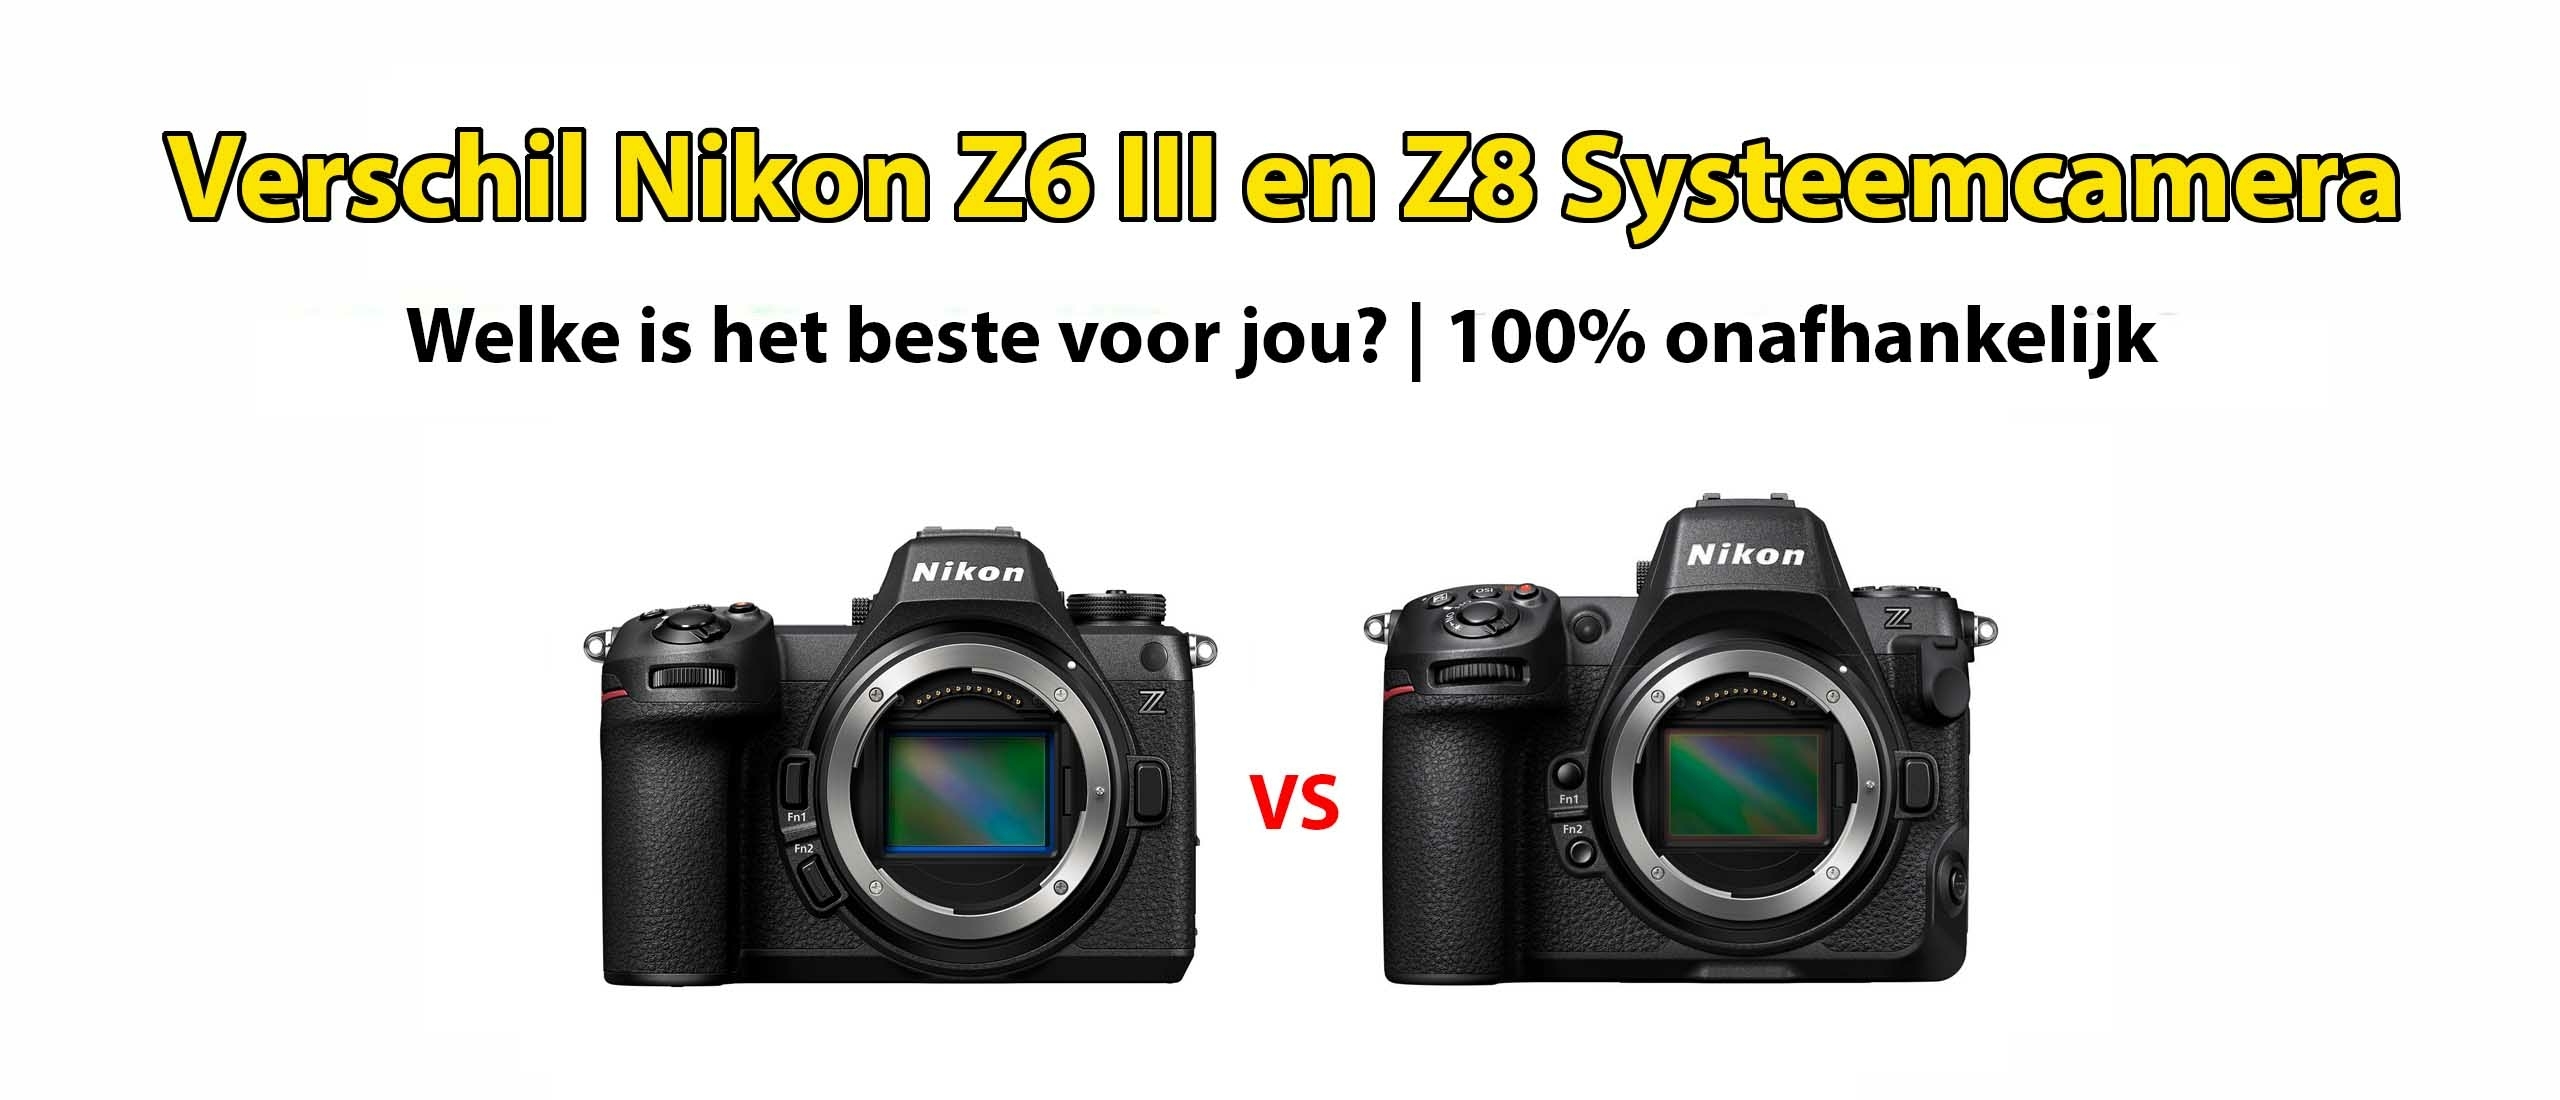 Wat is het verschil tussen Nikon Z6 III en Z8? Welke is beter?